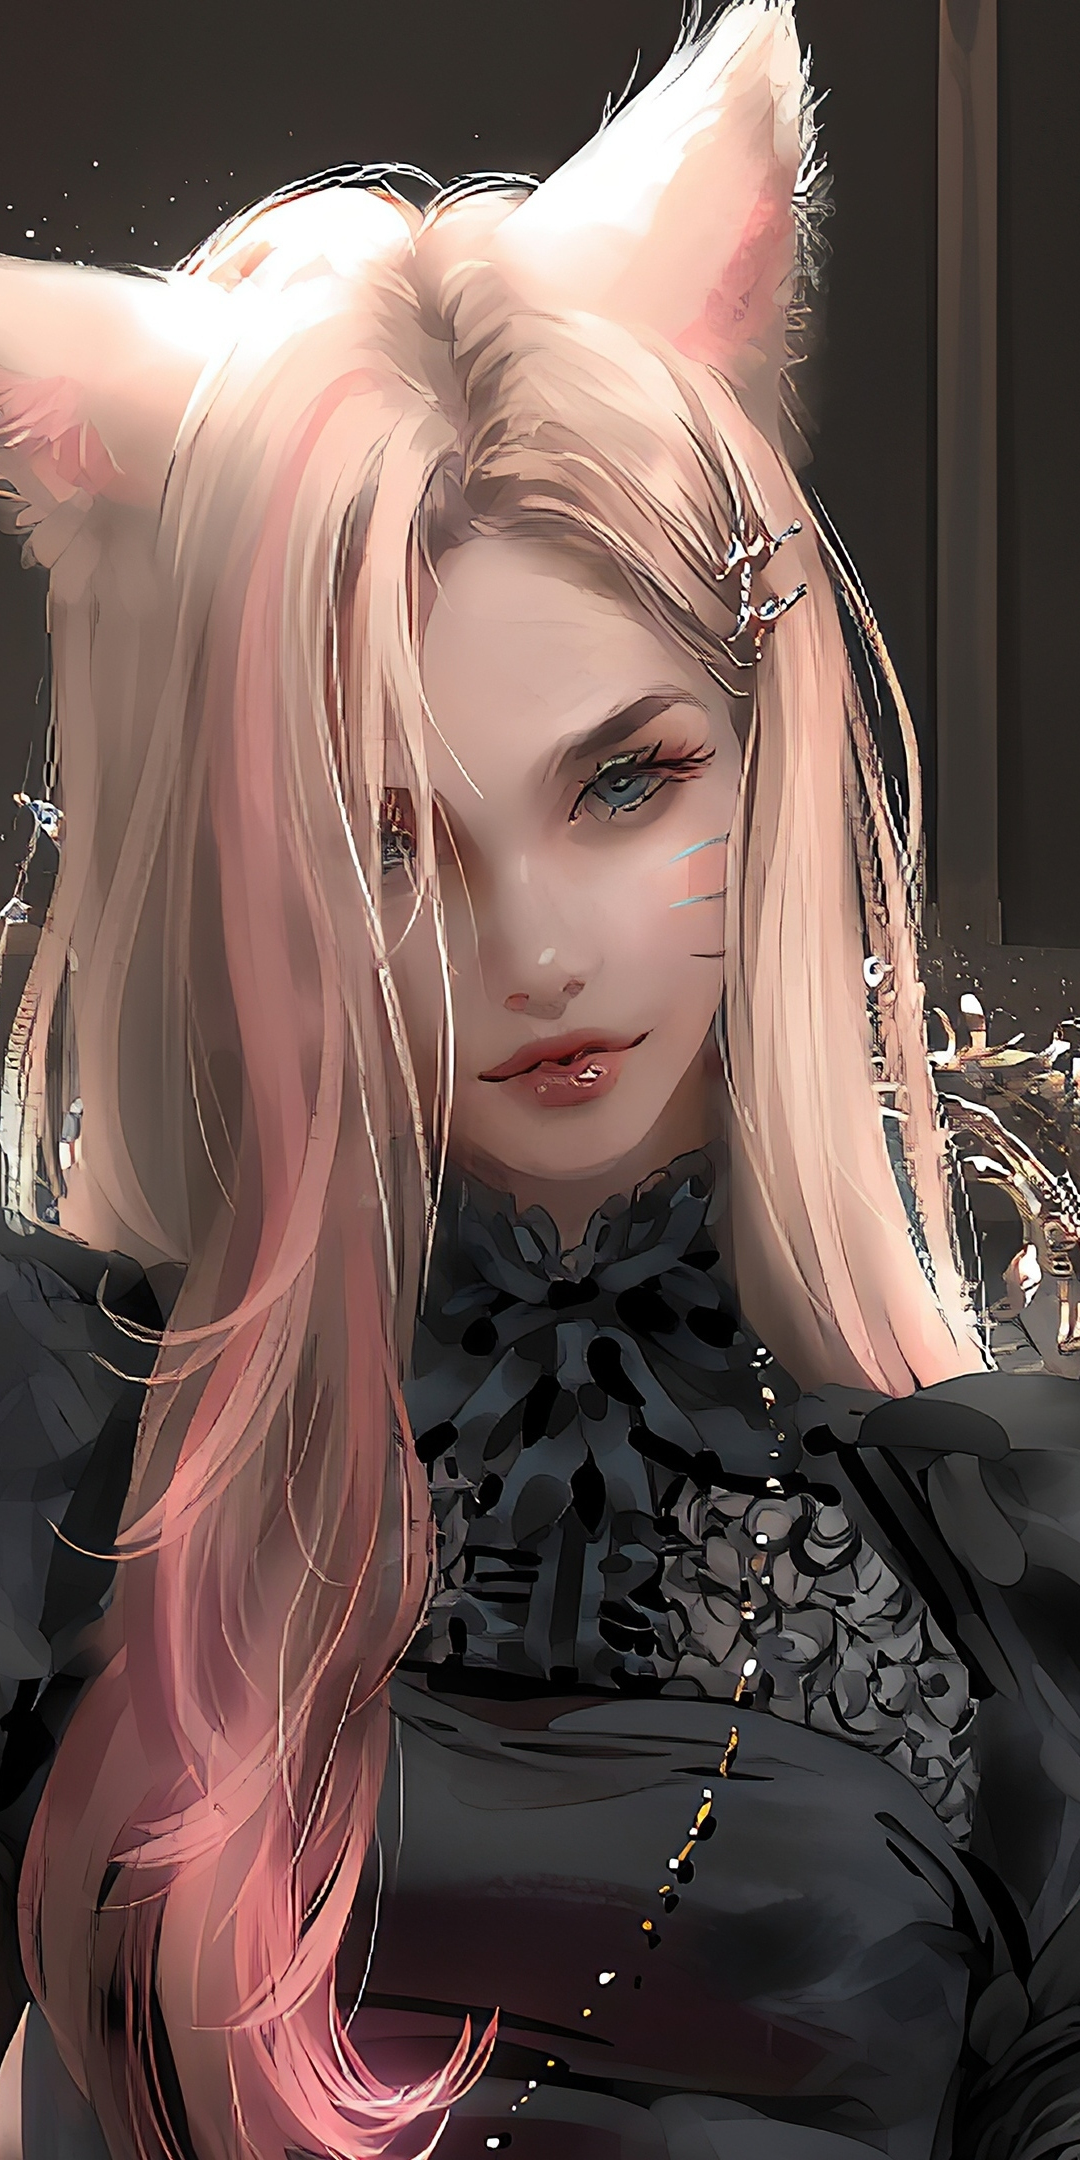 Elf girl, fantasy, beautiful pink hair, art, 1080x2160 wallpaper